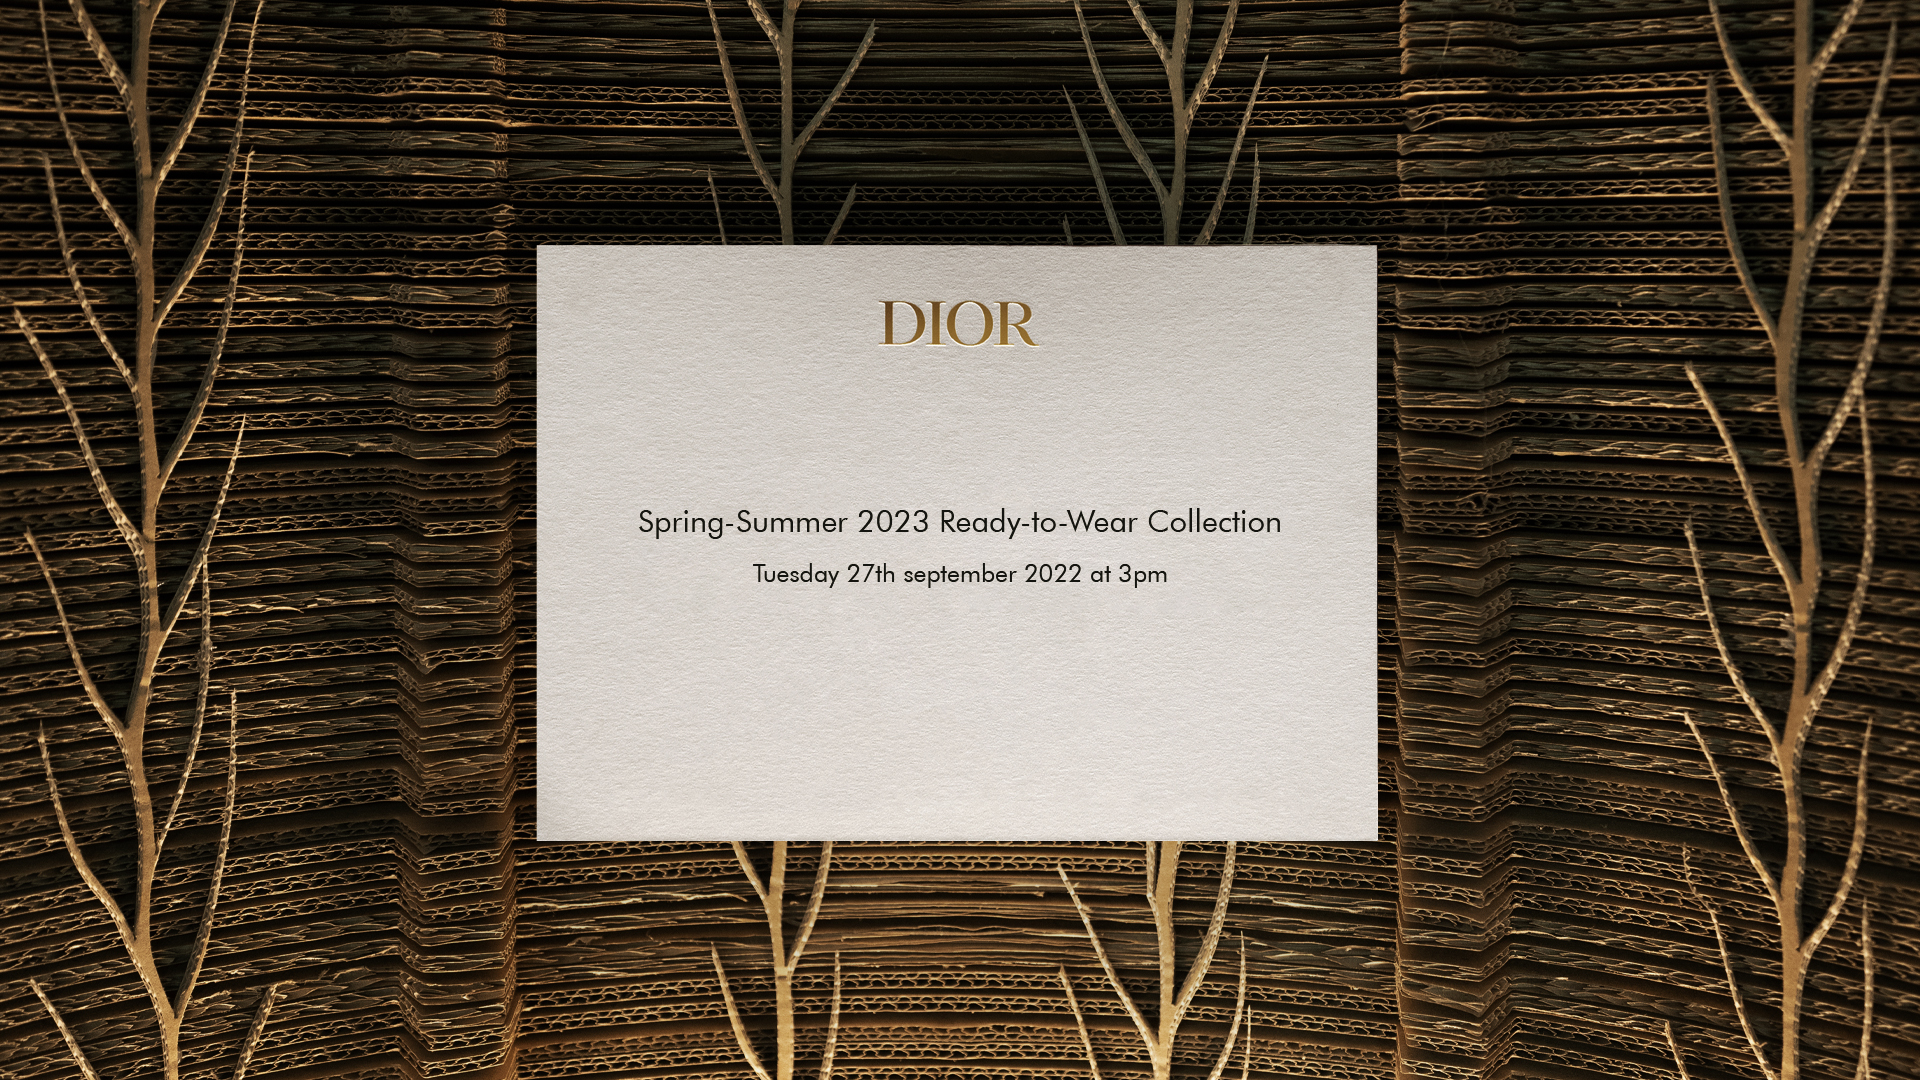 Sigue en directo el desfile de verano 2023 de Dior